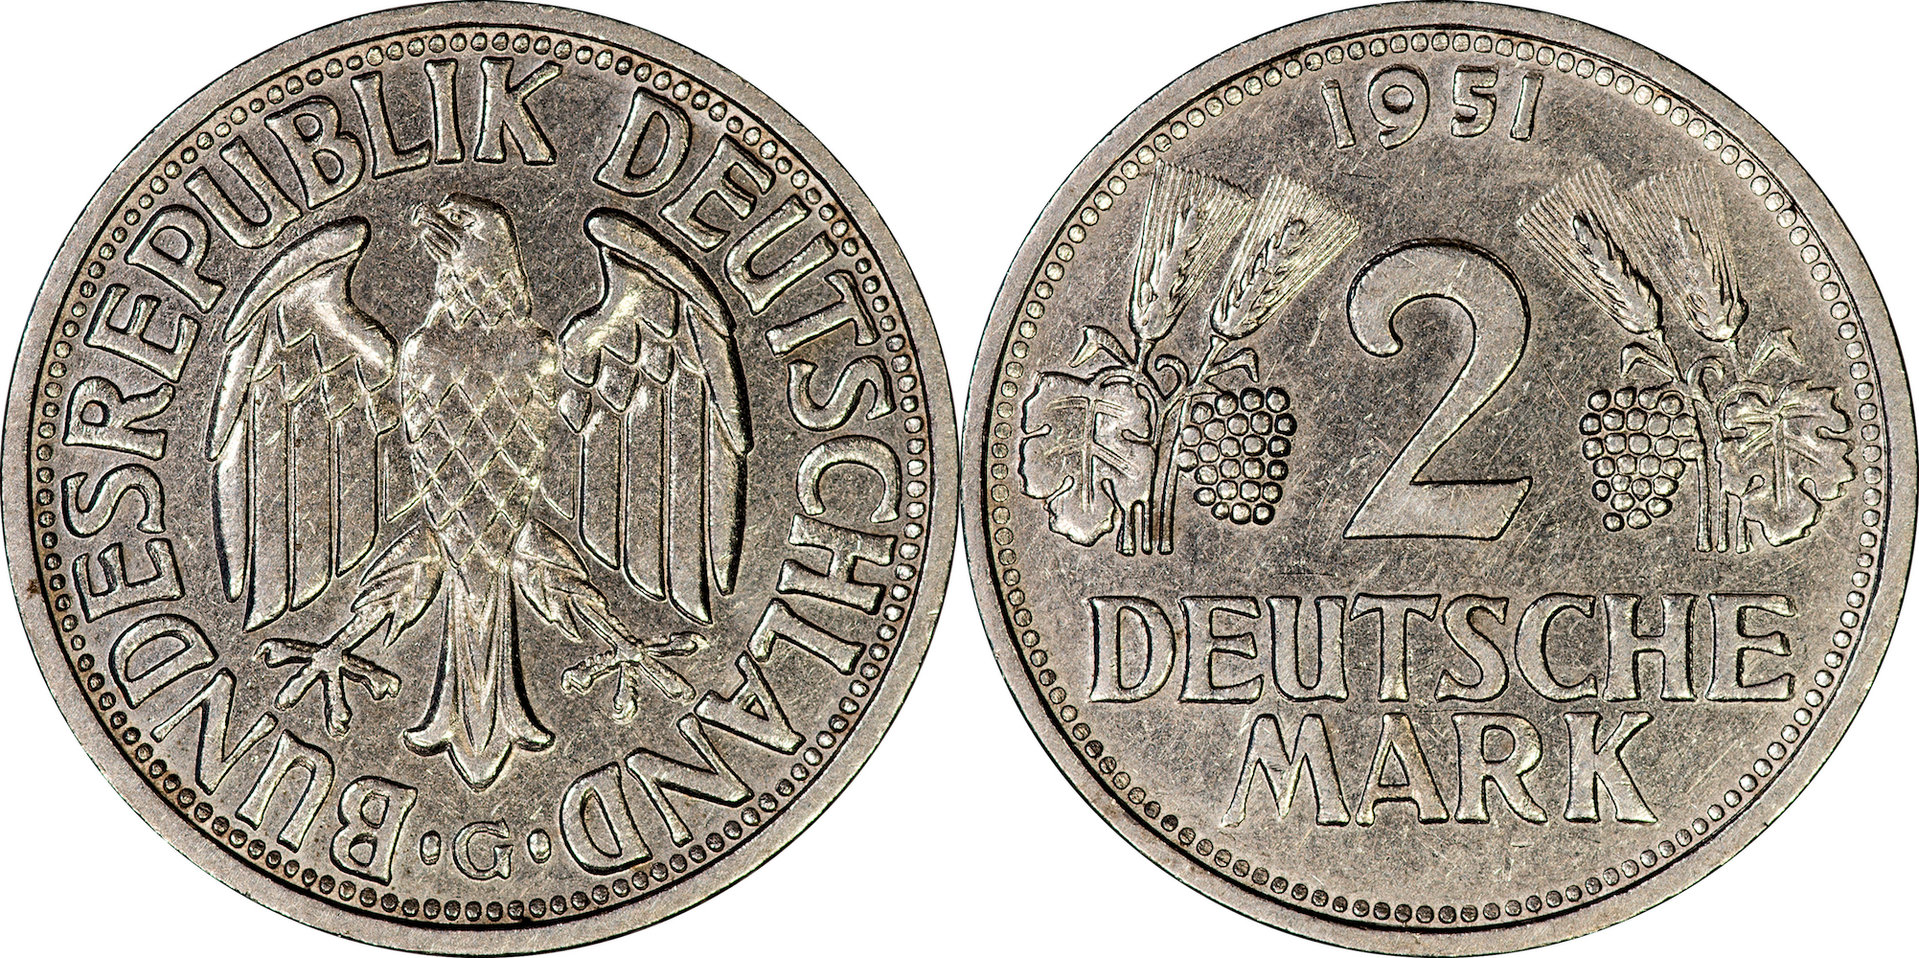 Germany (Federal Republic) - 1951 G 2 Marks.jpg